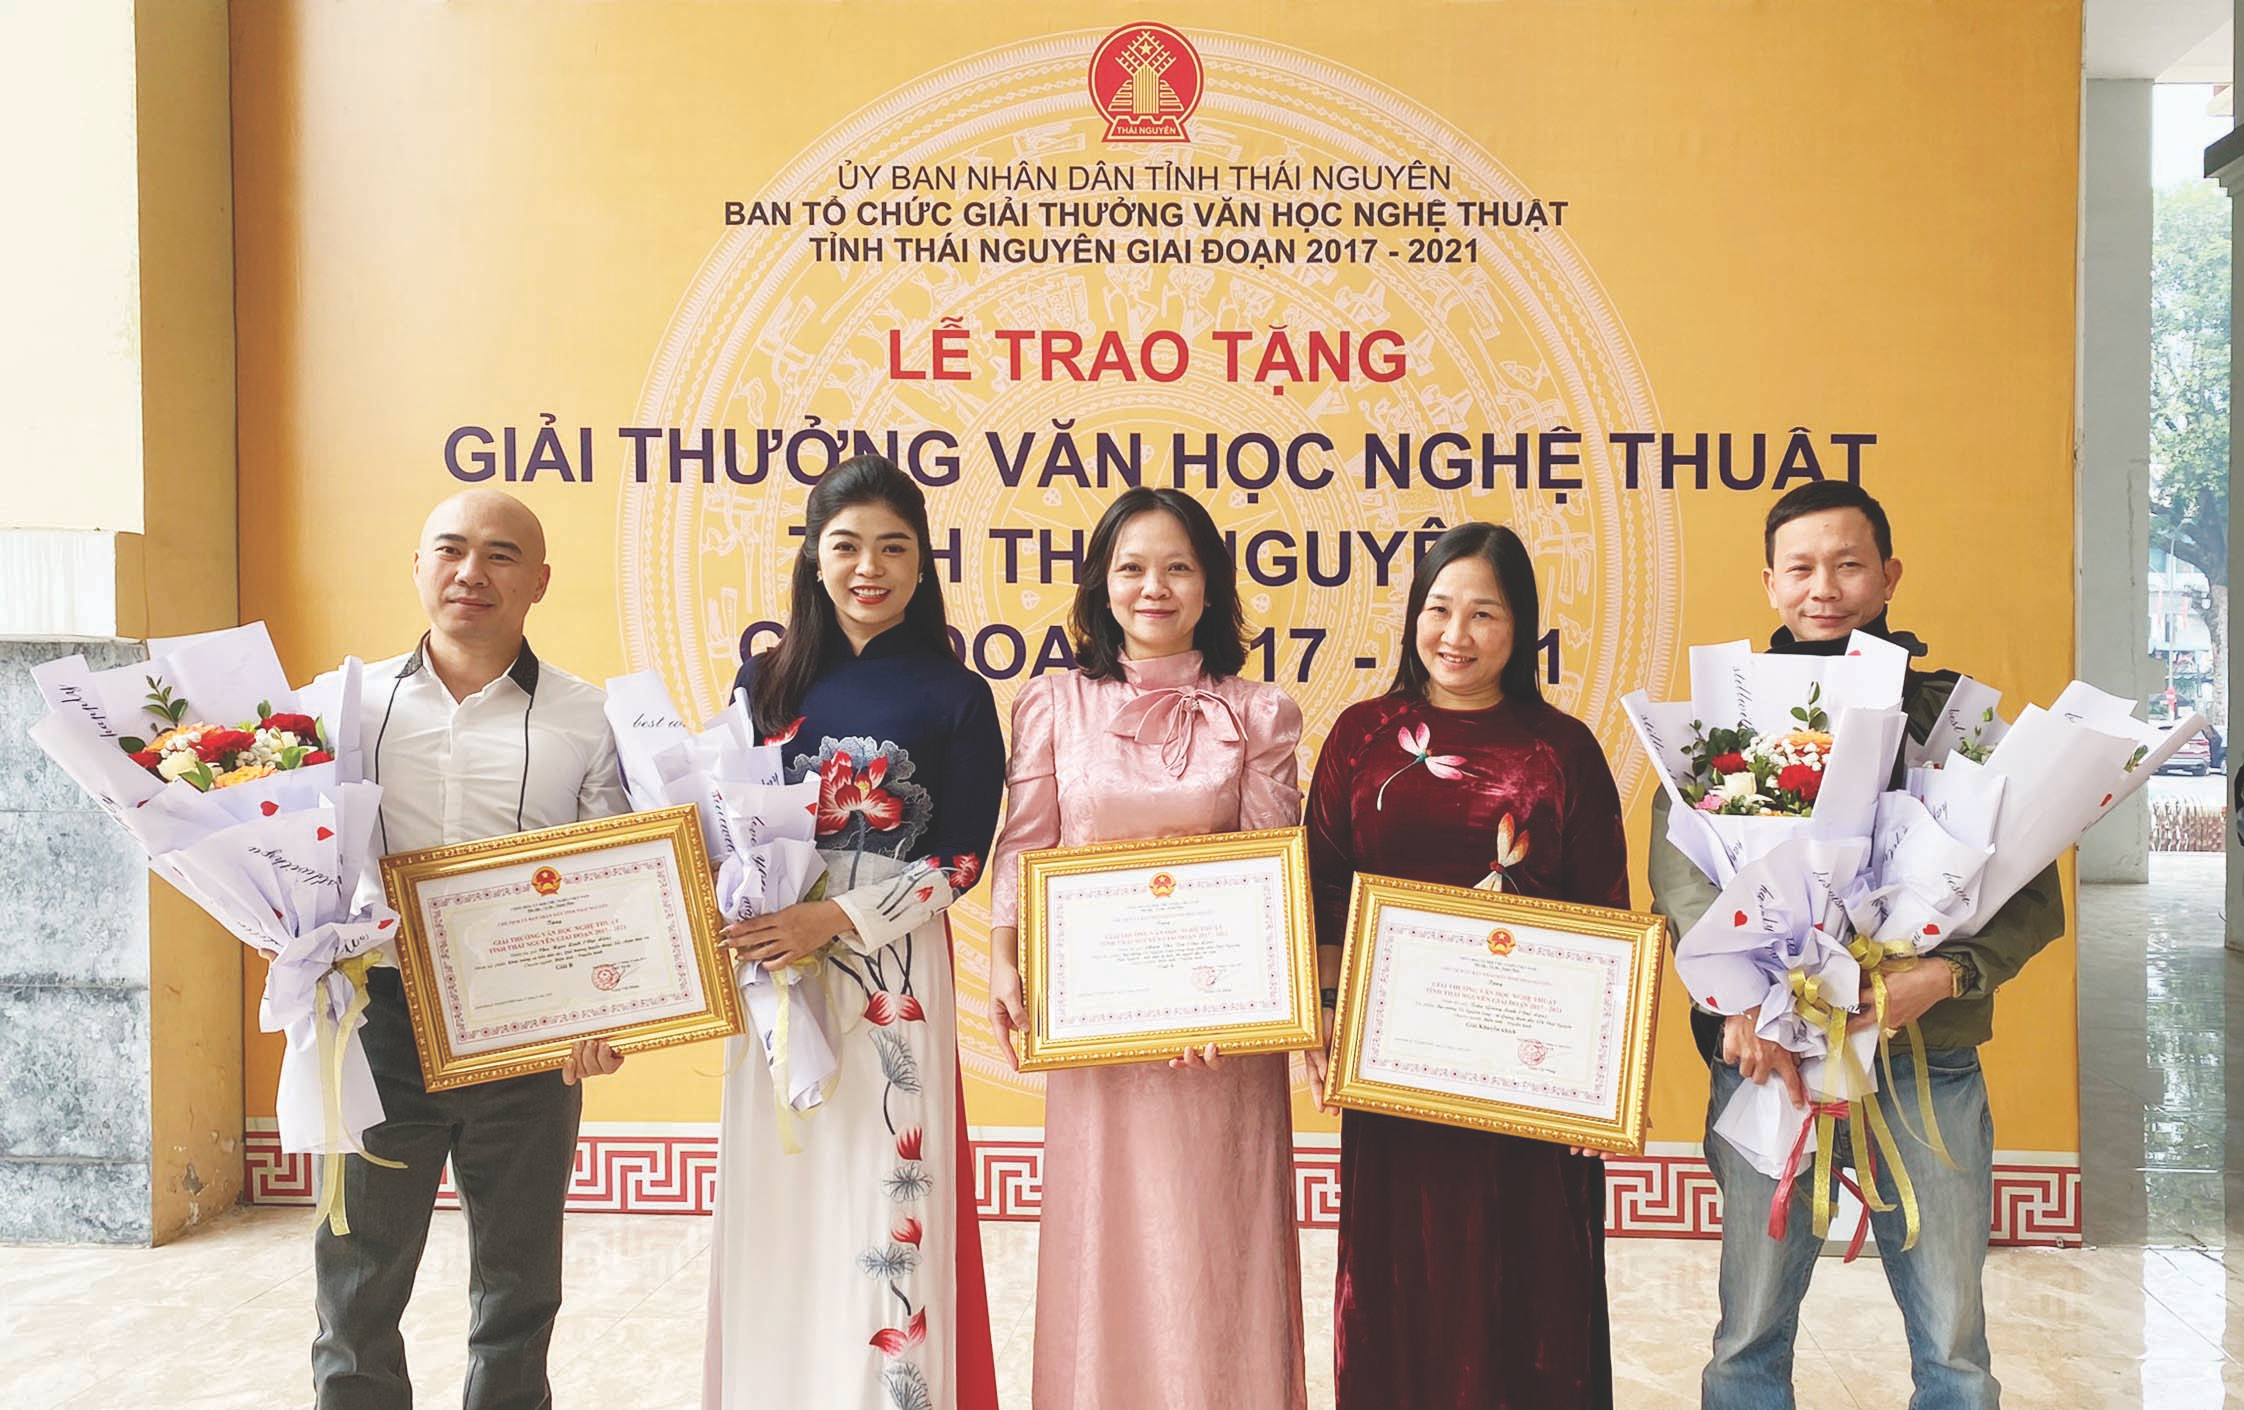 Nhà báo Phạm Thu Trà (đứng giữa) cùng nhóm tác giả của Đài Phát thanh - Truyền hình đoạt Giải thưởng VHNT tỉnh Thái Nguyên, giai đoạn 2017 - 2021. Ảnh: Đ.T